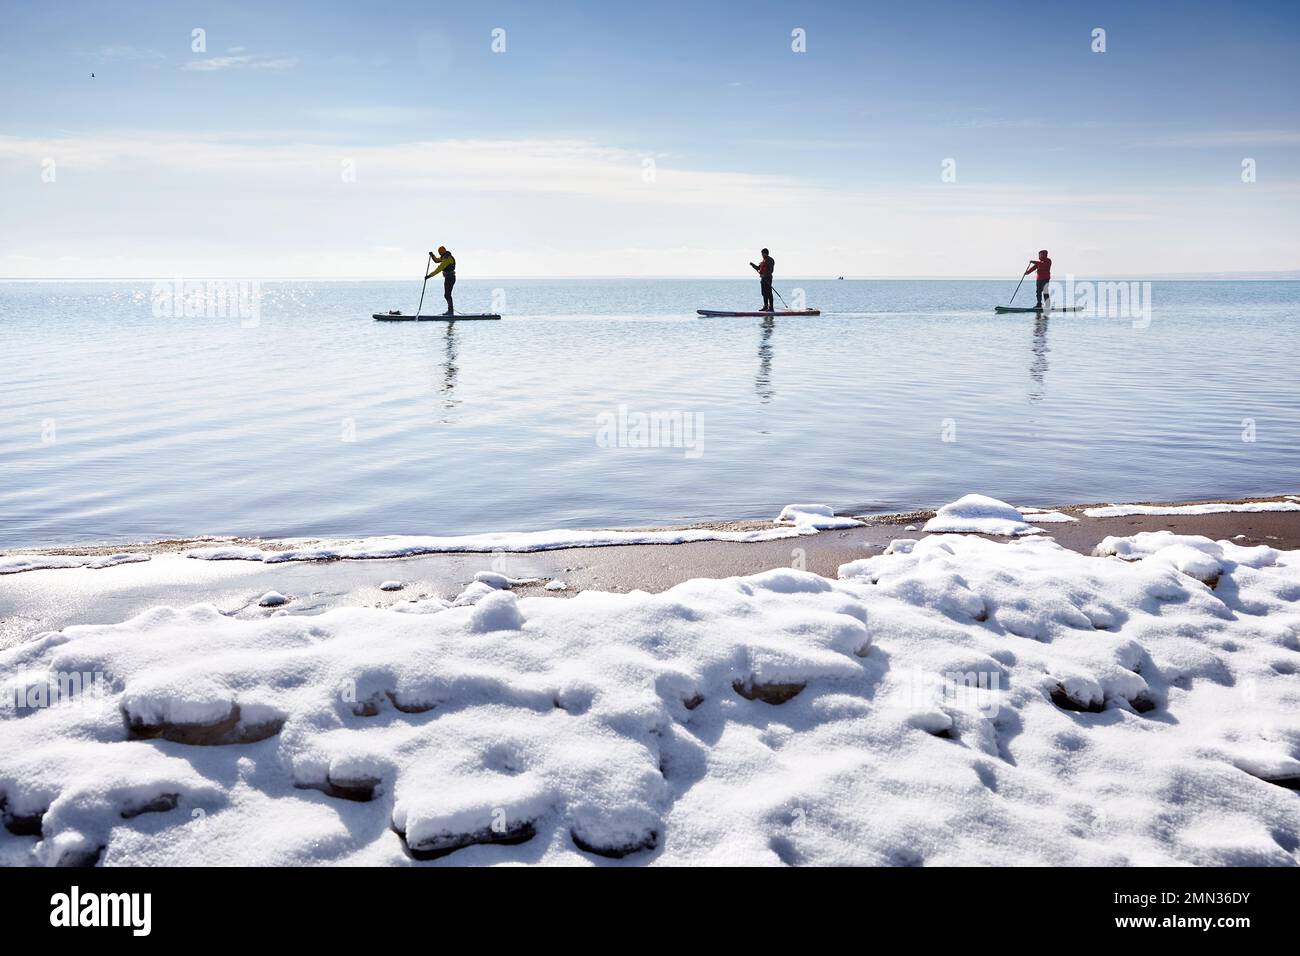 Der Three-man-Athlet paddelt auf dem Sup-Board im See mit Eis im Winter und Schnee am Strand. Extremes Outdoor-Sportkonzept Stockfoto